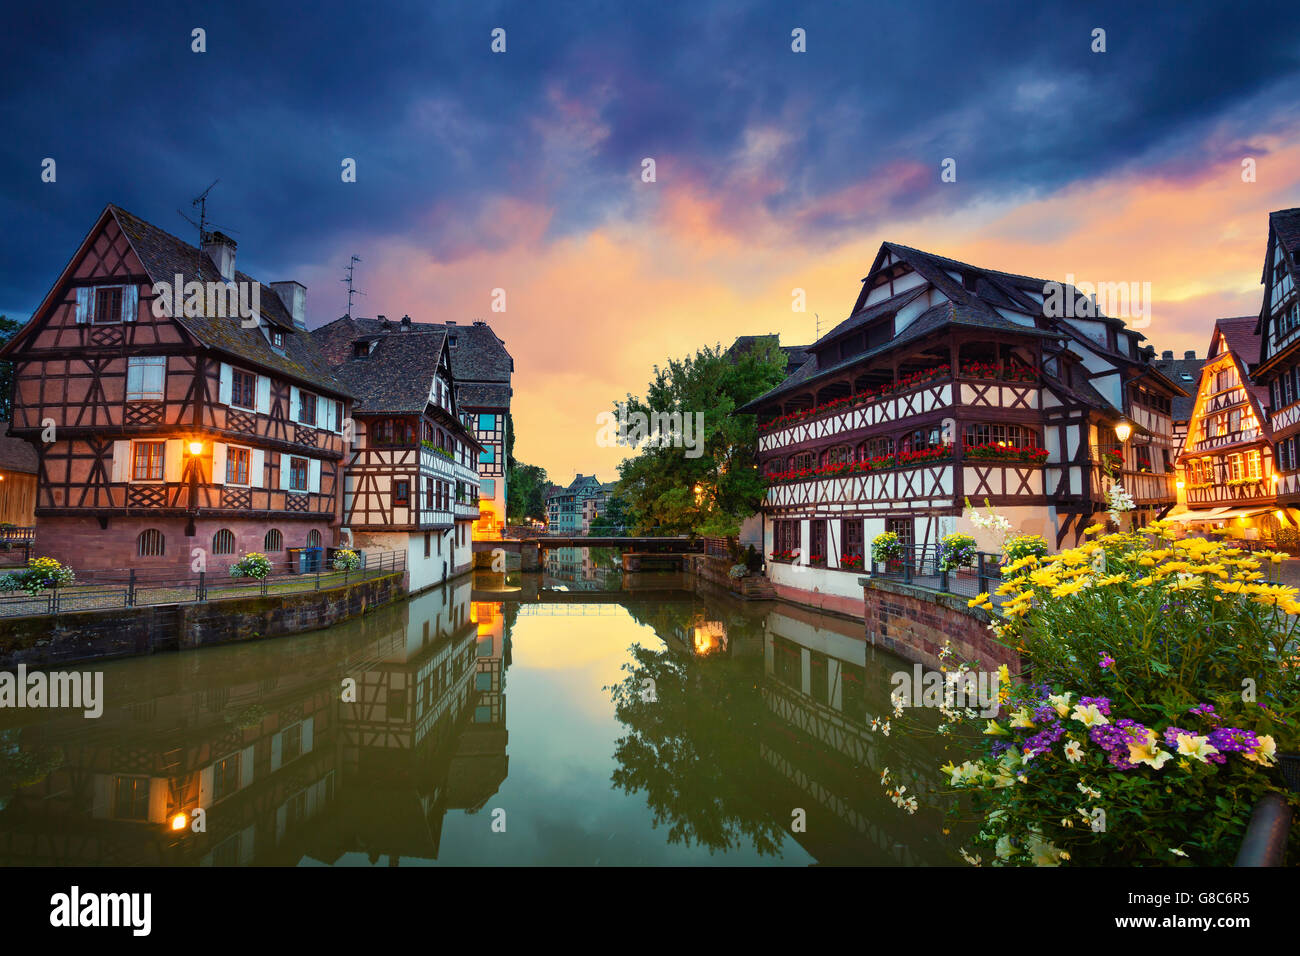 Strasbourg. image de vieille ville de strasbourg pendant le coucher du soleil spectaculaire. Banque D'Images